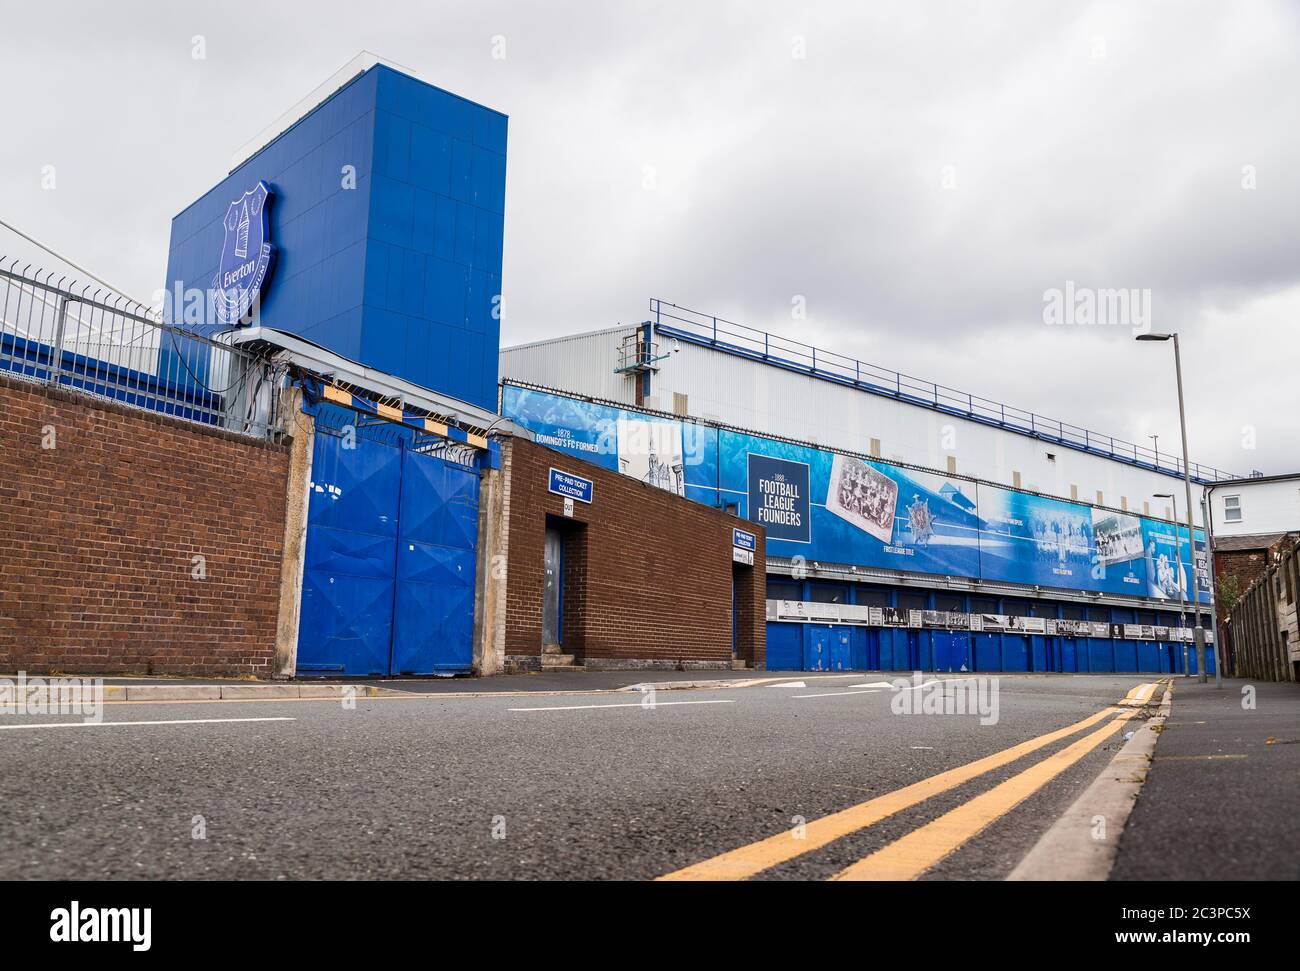 En regardant le stand de Bullens Road (domicile d'Everton FC) vu du côté de la route en juin 2020. Banque D'Images